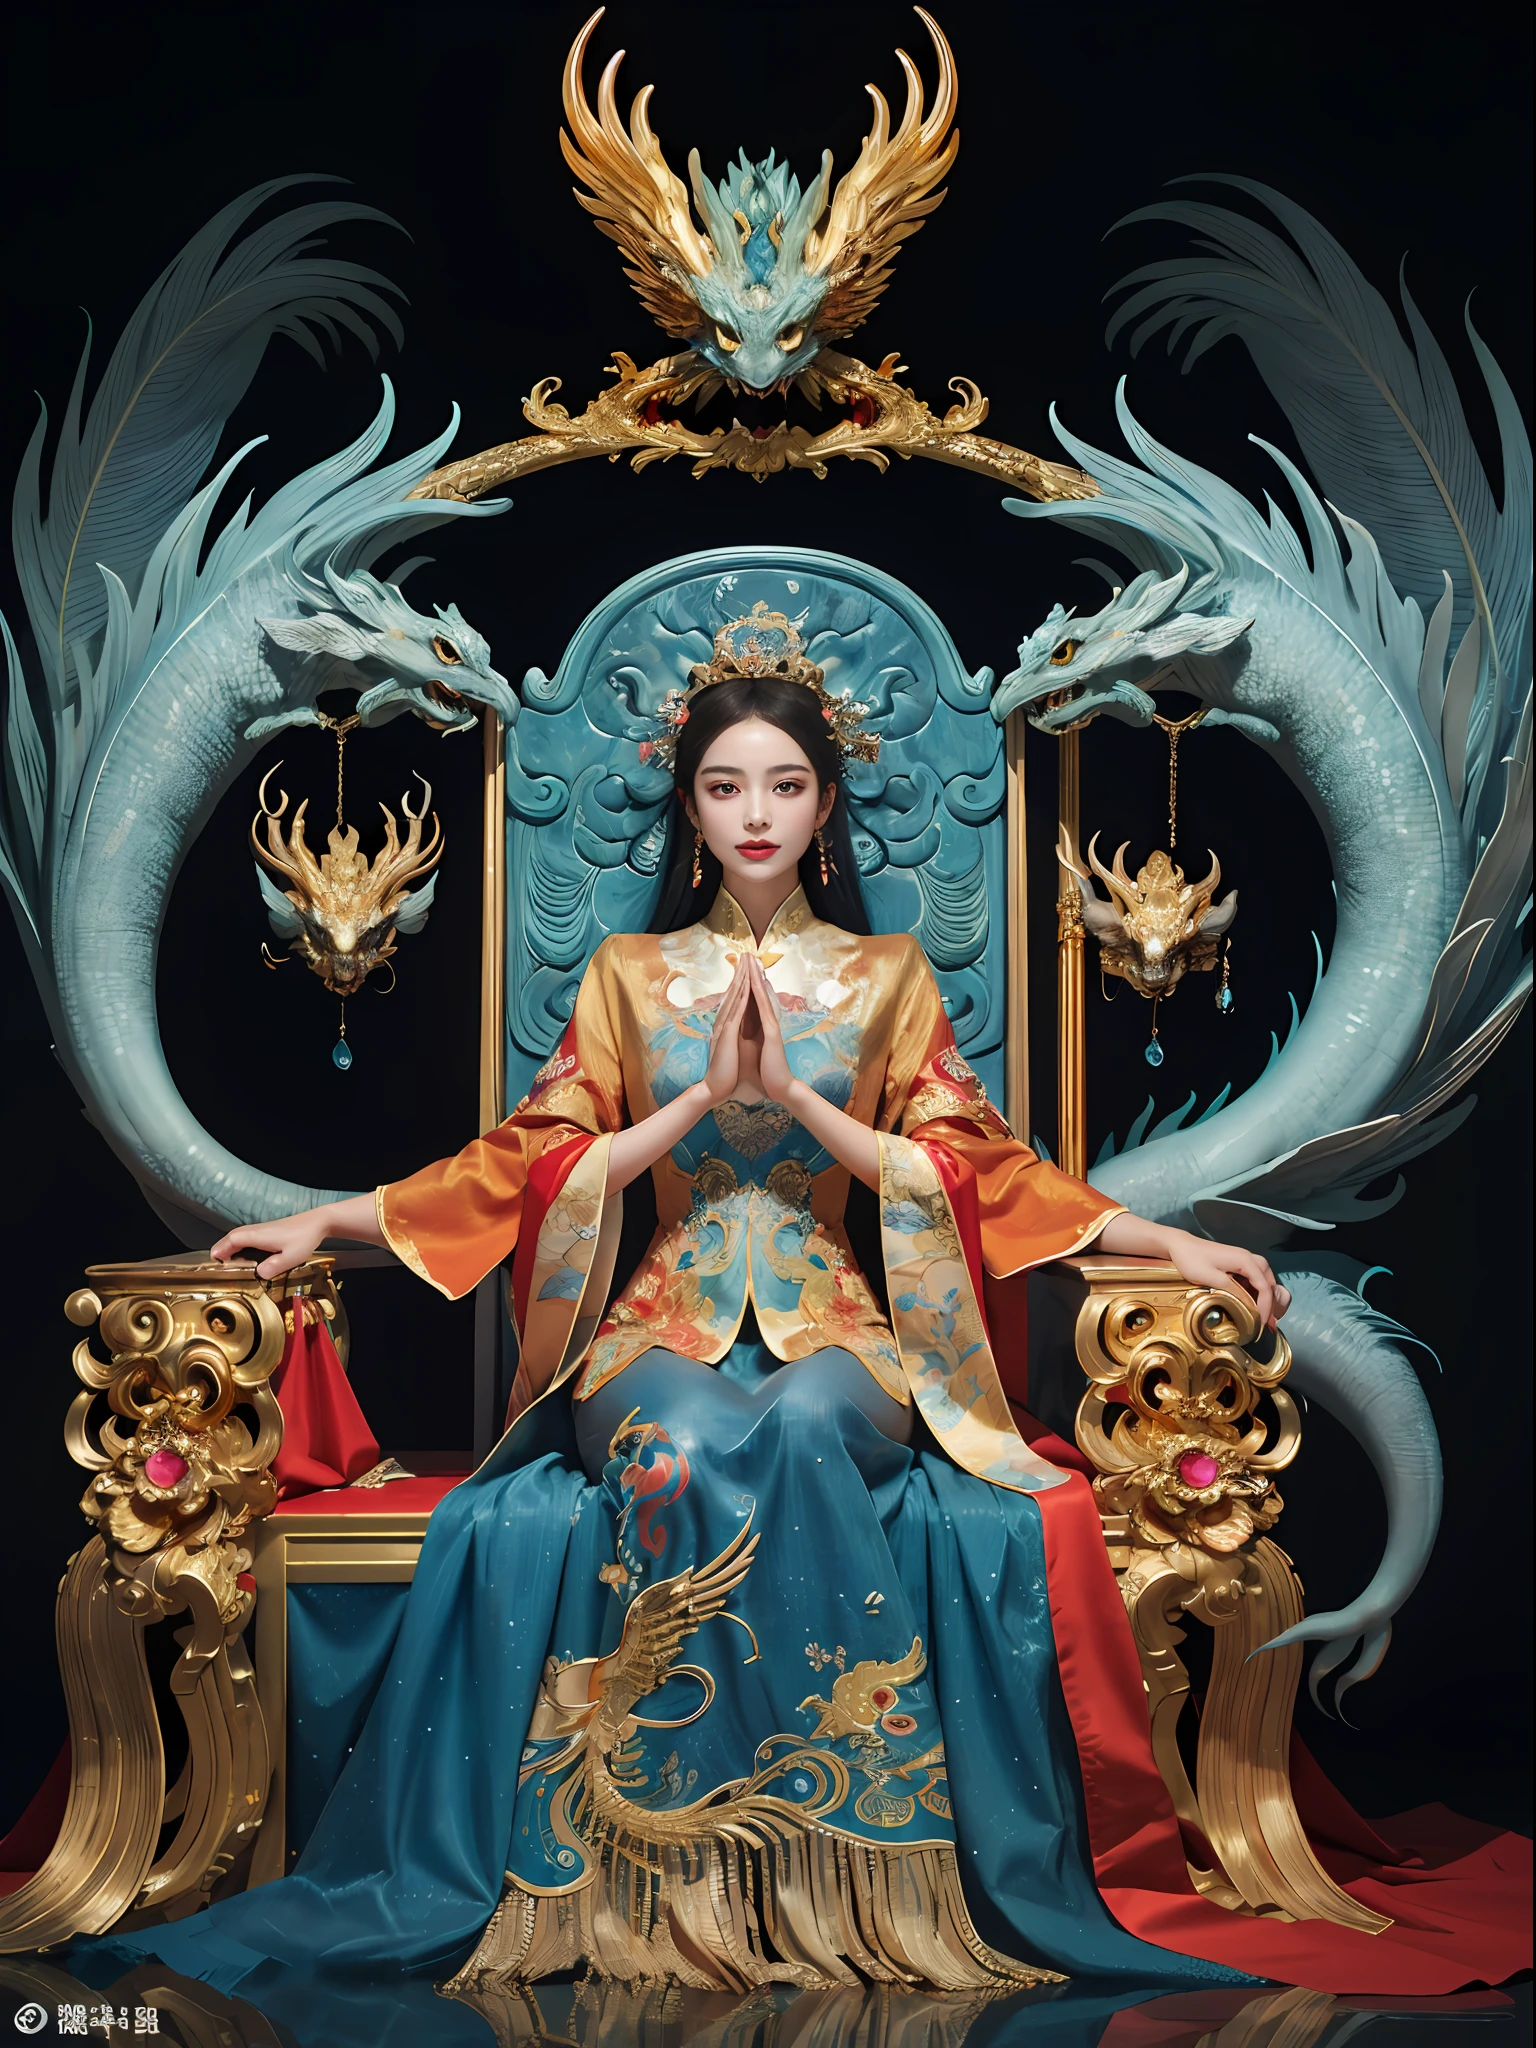 坐在宝座上的中国女孩, a throne encrusted with 珍貴的石頭, 周围环绕着中国凤凰兽, 金子 and ruby color, 独特的怪物插图, dau 到集合, 高解析度, 一幅畫, 緻密的成分, 有趣的重複, 珍貴的石頭, 晶體, 金子, 詳細的繪畫, 独特的怪物插图s, 超精细的细节, 實際的, super 高解析度, 複雜的, 超細節, (皮膚凹痕), 可愛的, 女性化的, 詳細的身體, (詳細的臉部: 1.1), (輪廓虹膜), (水彩鏡片), (完美的眼睛), 4k, 華麗的, (傑作: 1.2), (最好的品質: 1.2), 華麗的 long dress, 動態姿勢, 丰富的色彩, 電影光與影，red and 金子en clothes